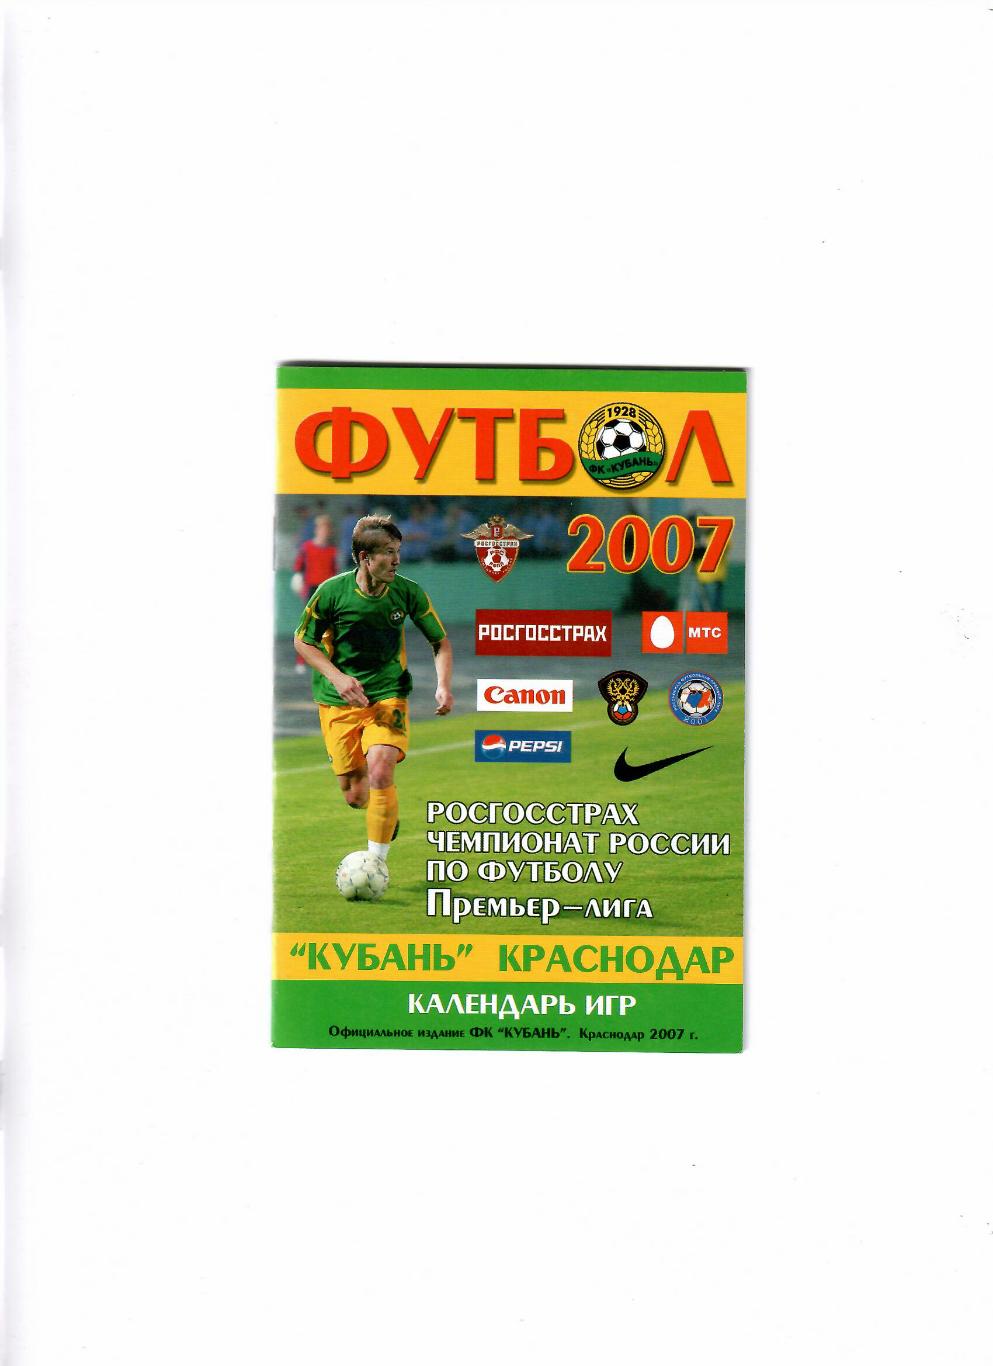 Кубань Краснодар Календарь игр 2007